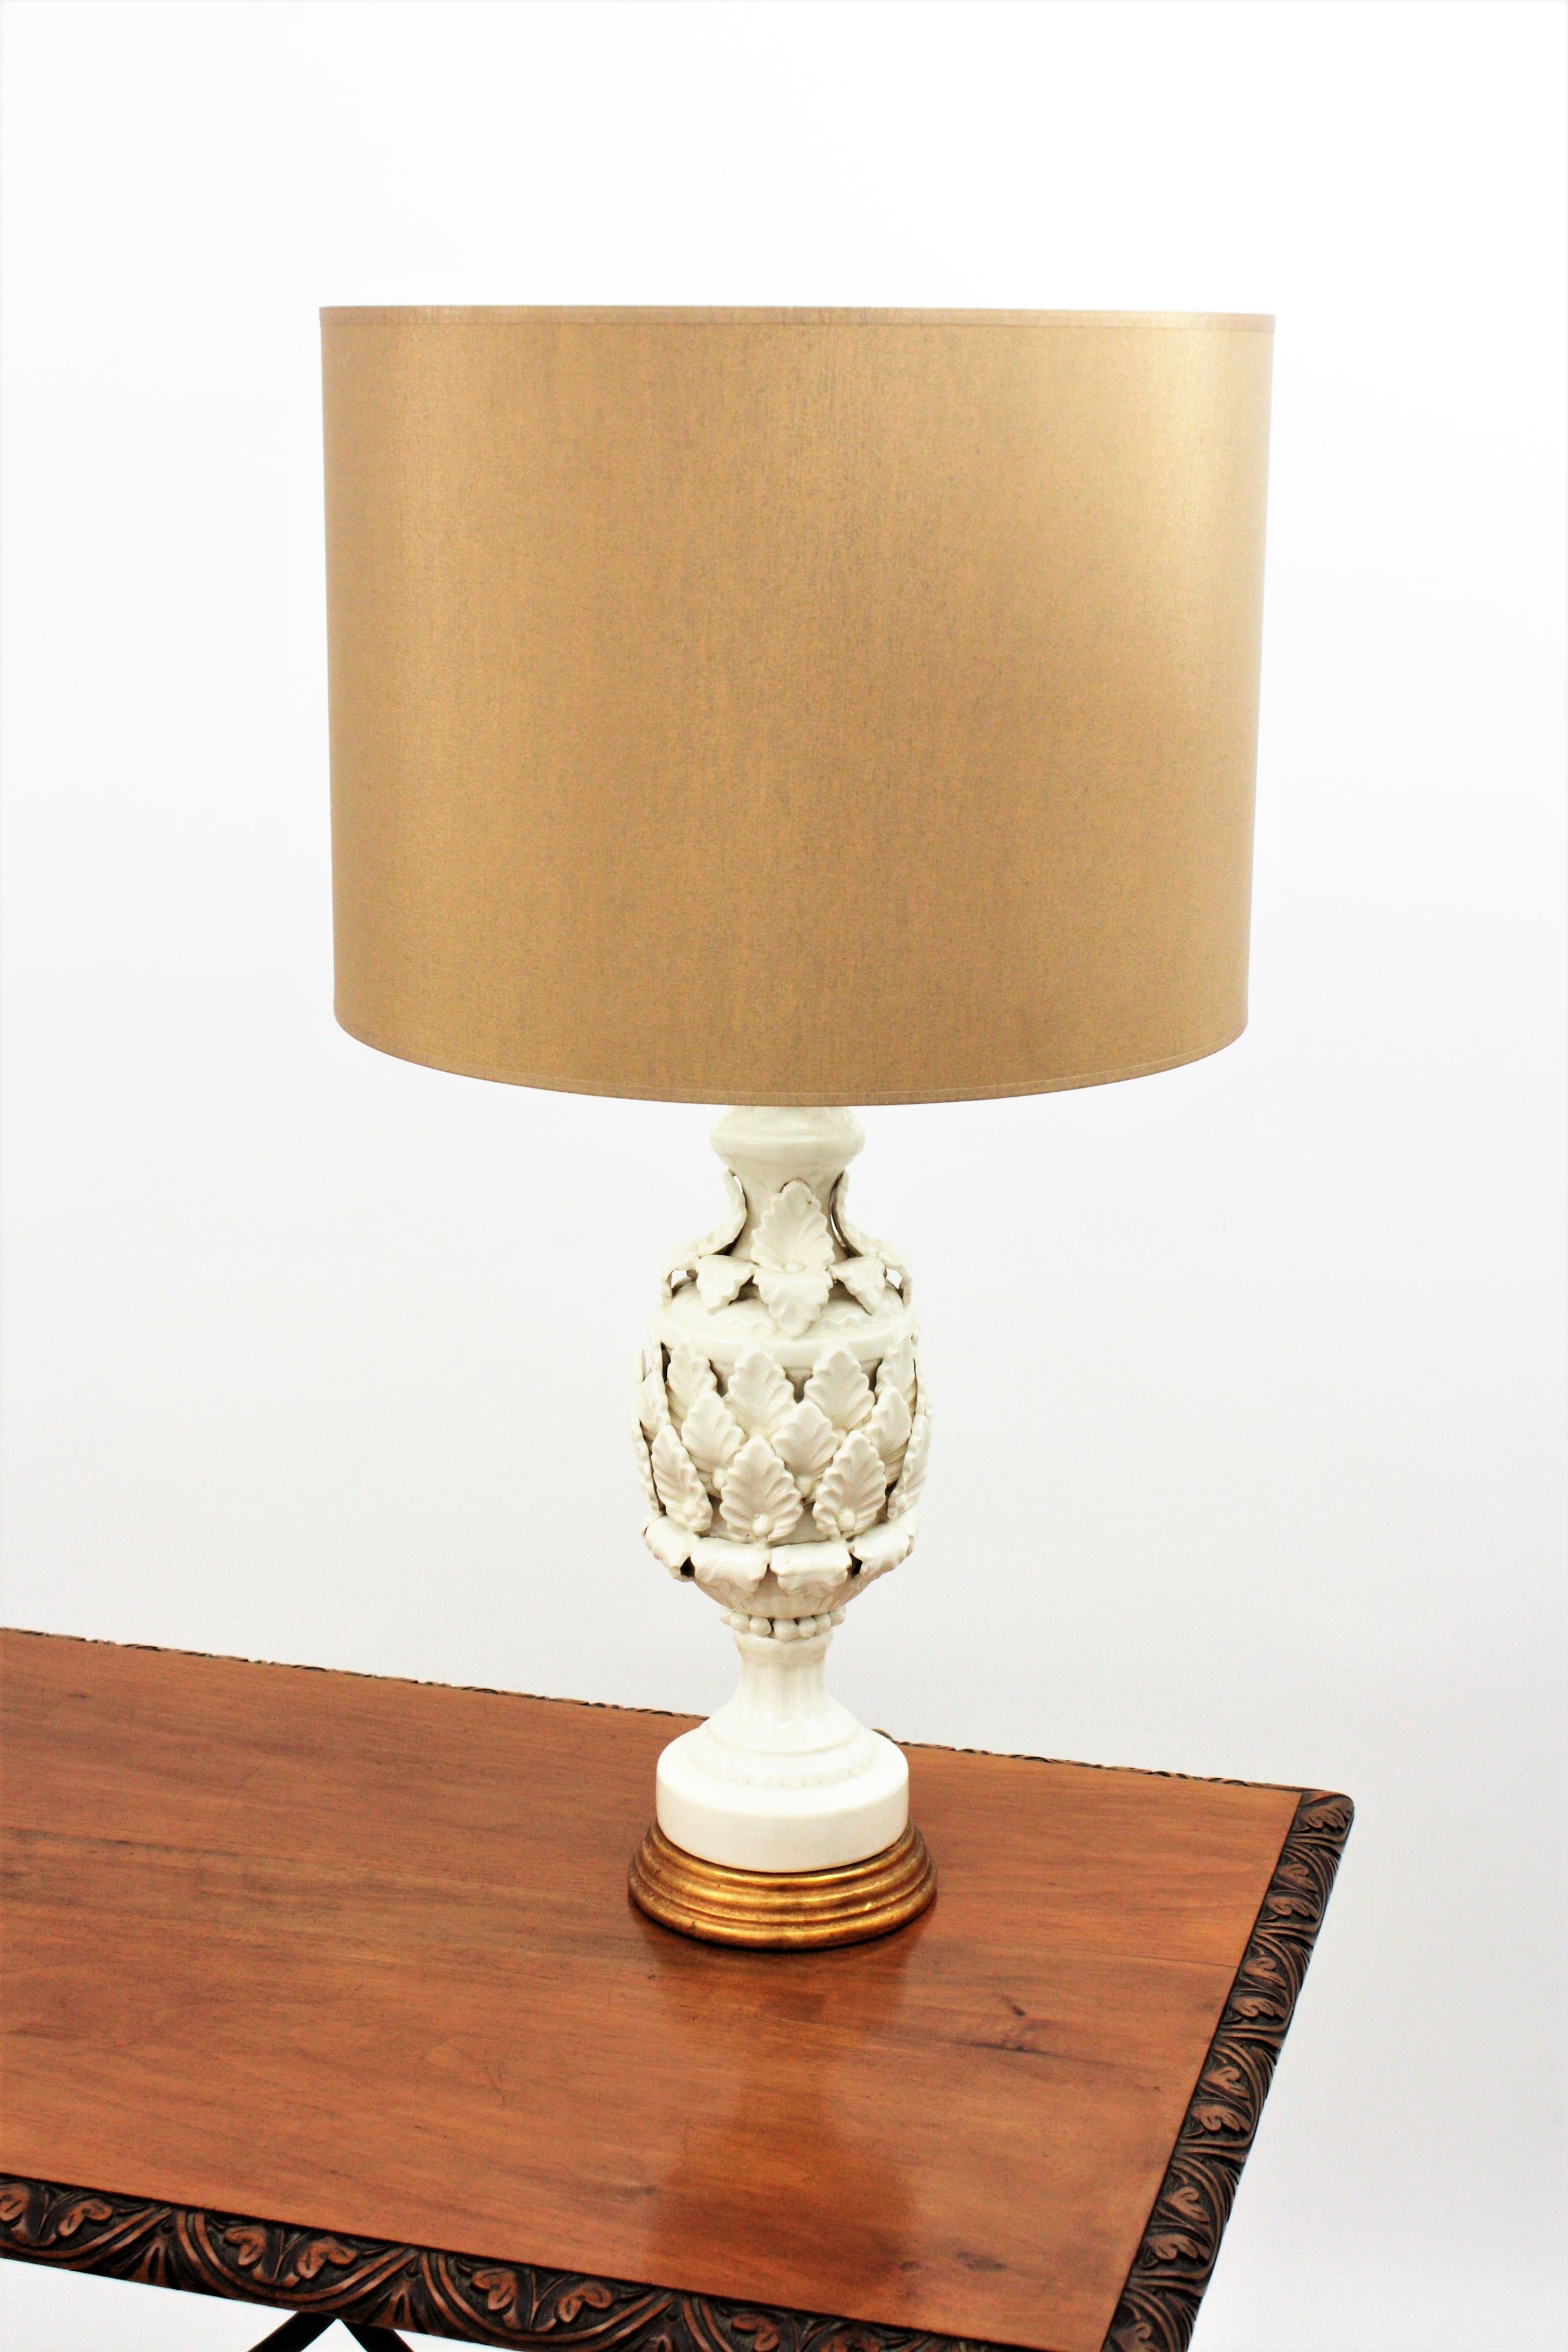 Spanish Manises Majolica White Glazed Ceramic Table Lamp on Giltwood Pedestal 2